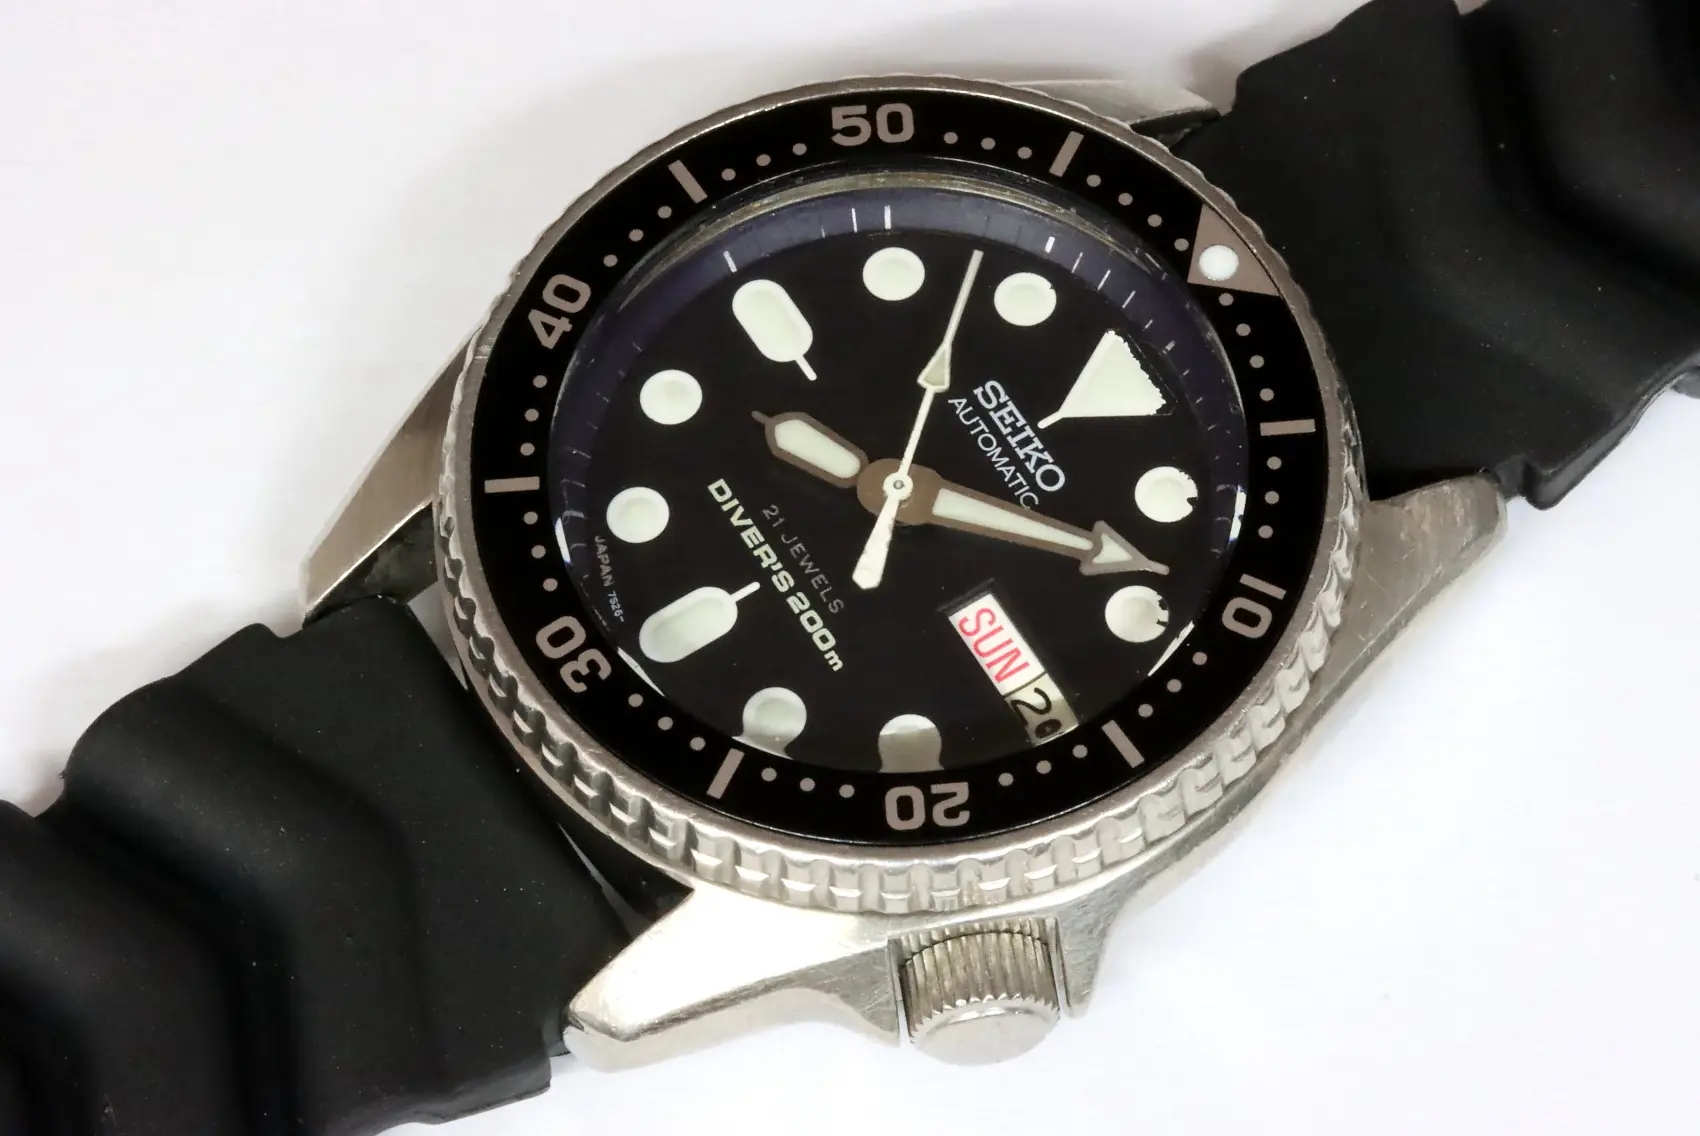 Seiko 7S26-0030 SKX013 midsize diver's watch